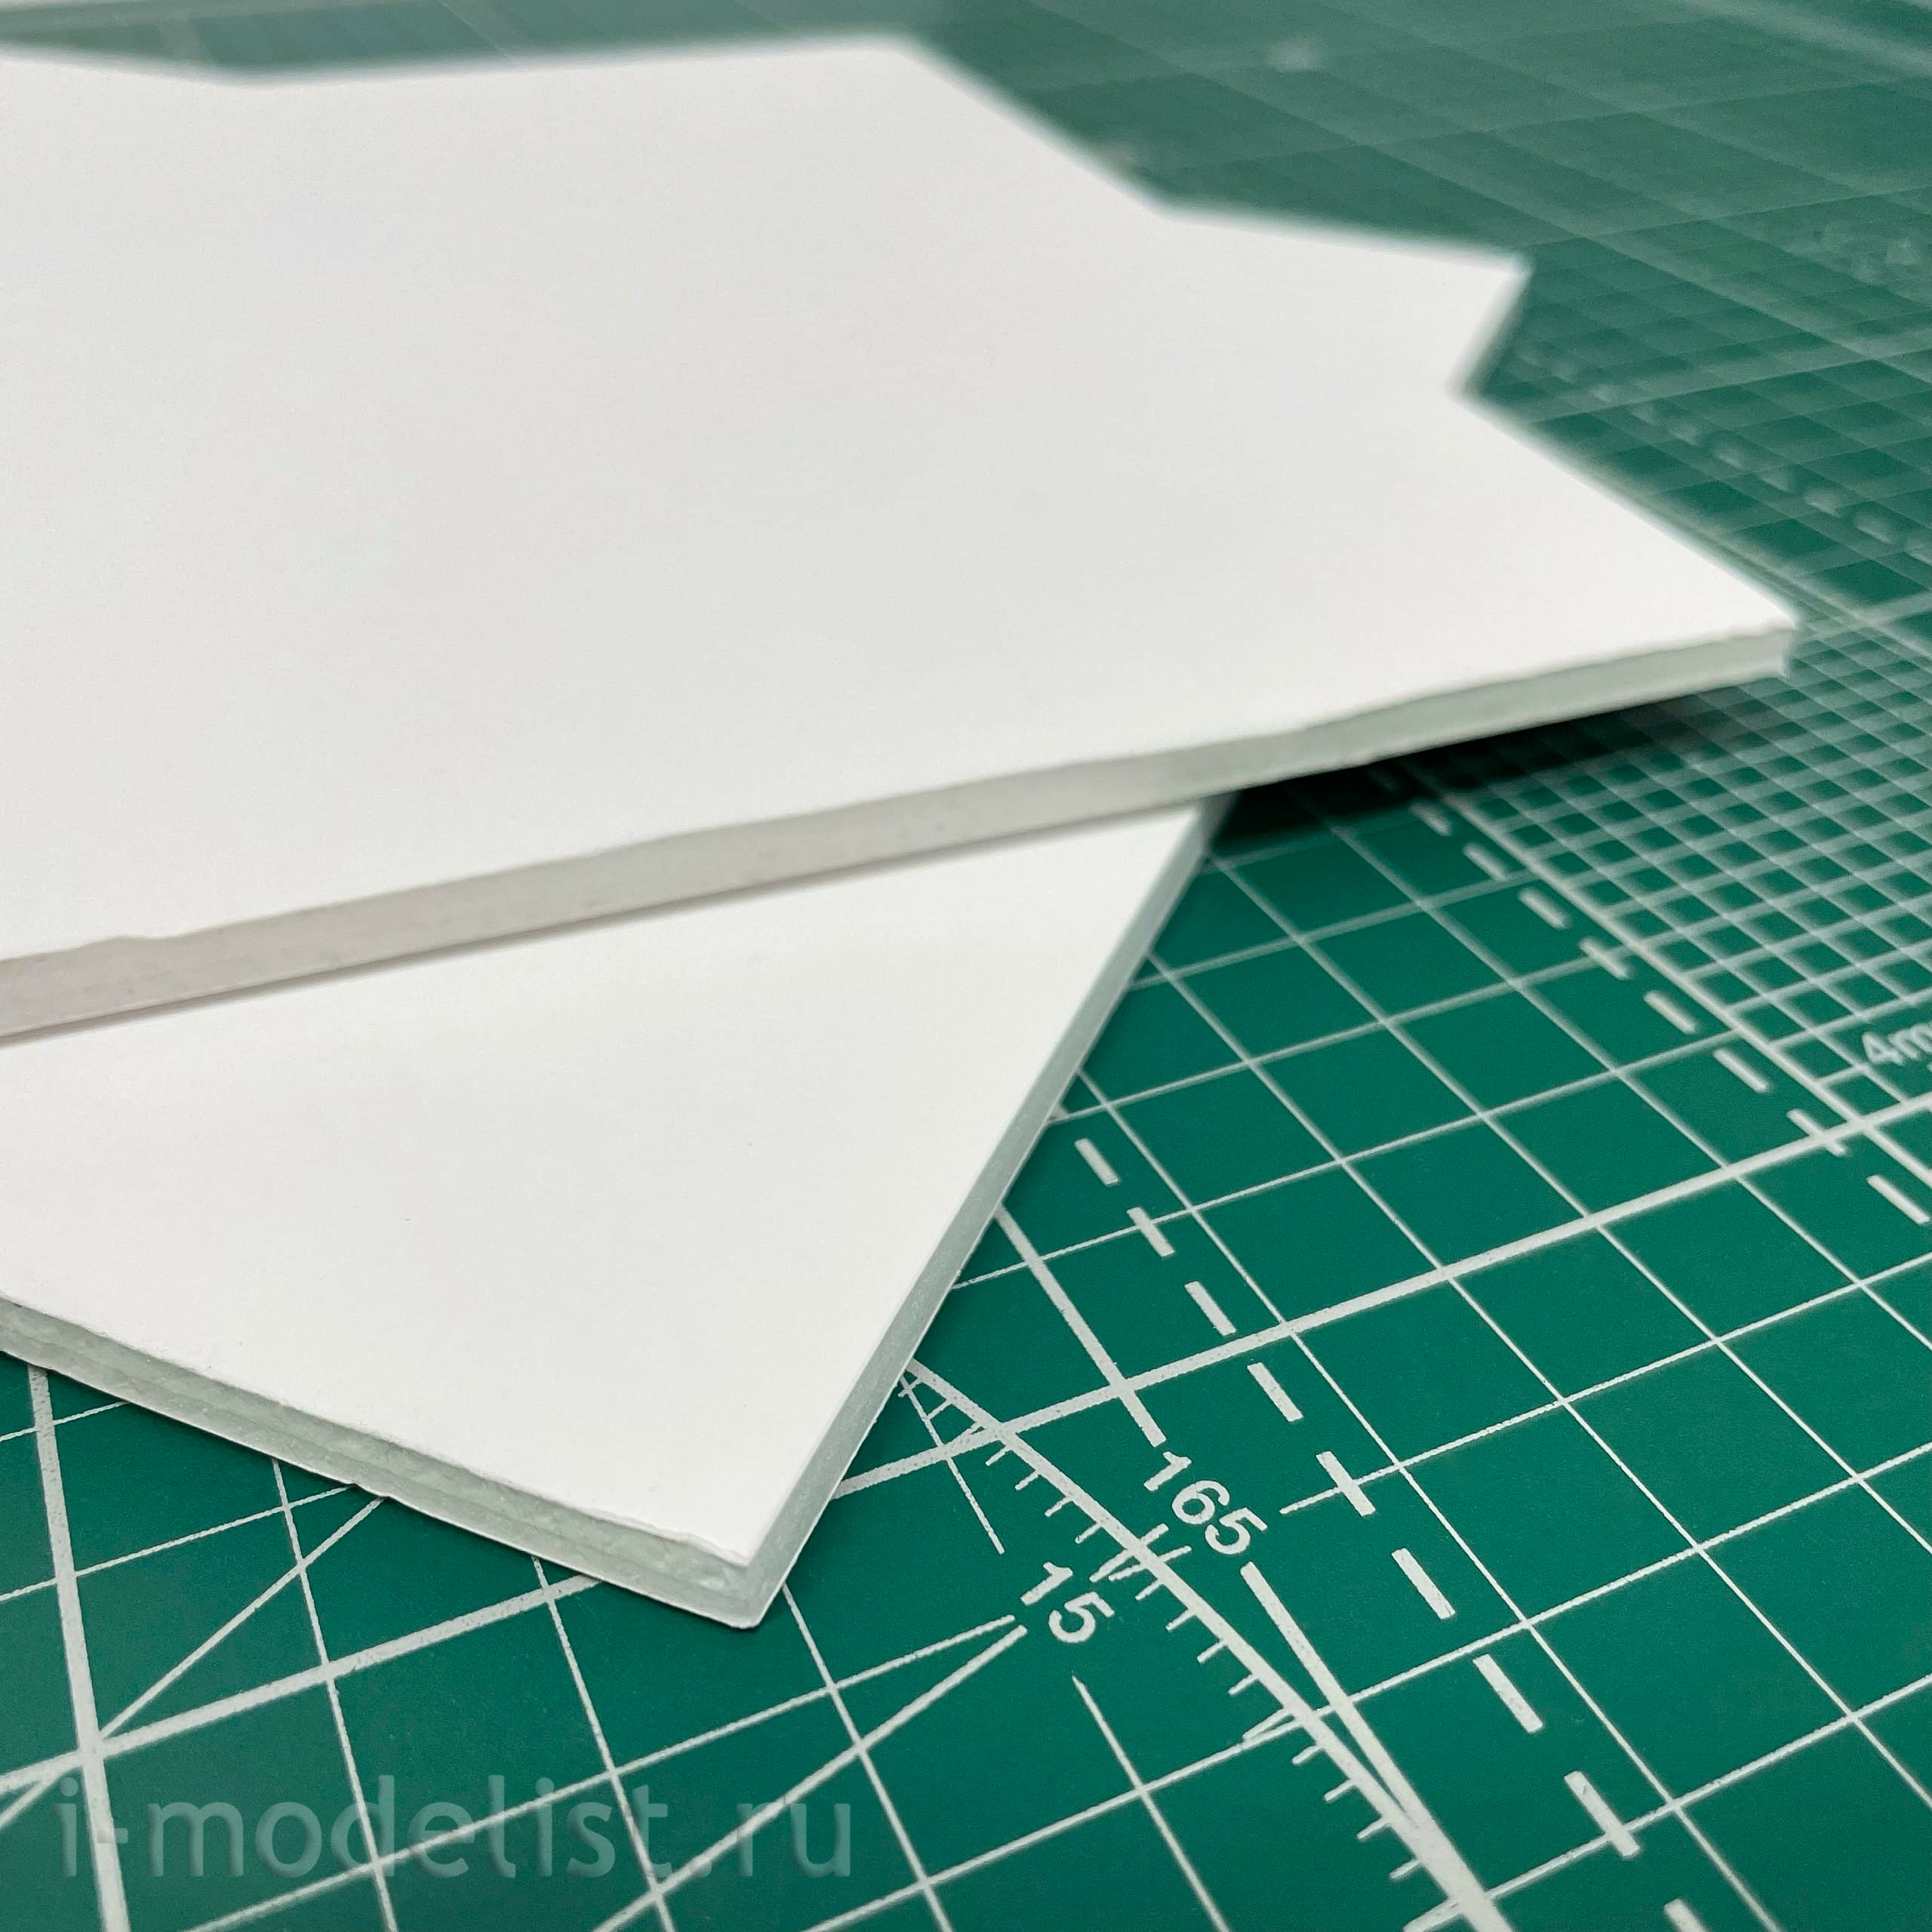 5602 Svmodel Foam cardboard white sheet 5.0 mm - 200x250 mm - 2 pcs.